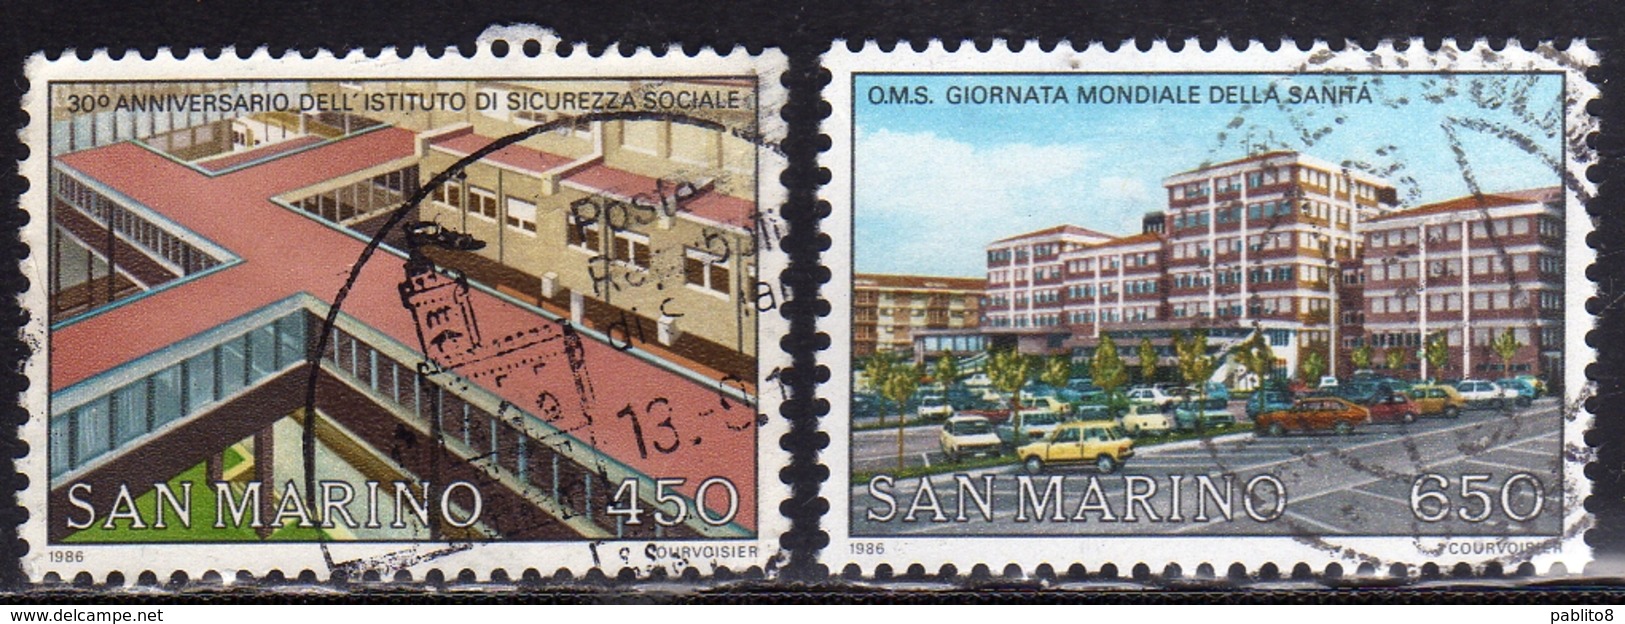 REPUBBLICA DI SAN MARINO 1986 GIORNATA MONDIALE DELLA SANITÀ HEALTH DAY SERIE COMPLETA COMPLETE SET USATA USED OBLITERE' - Used Stamps